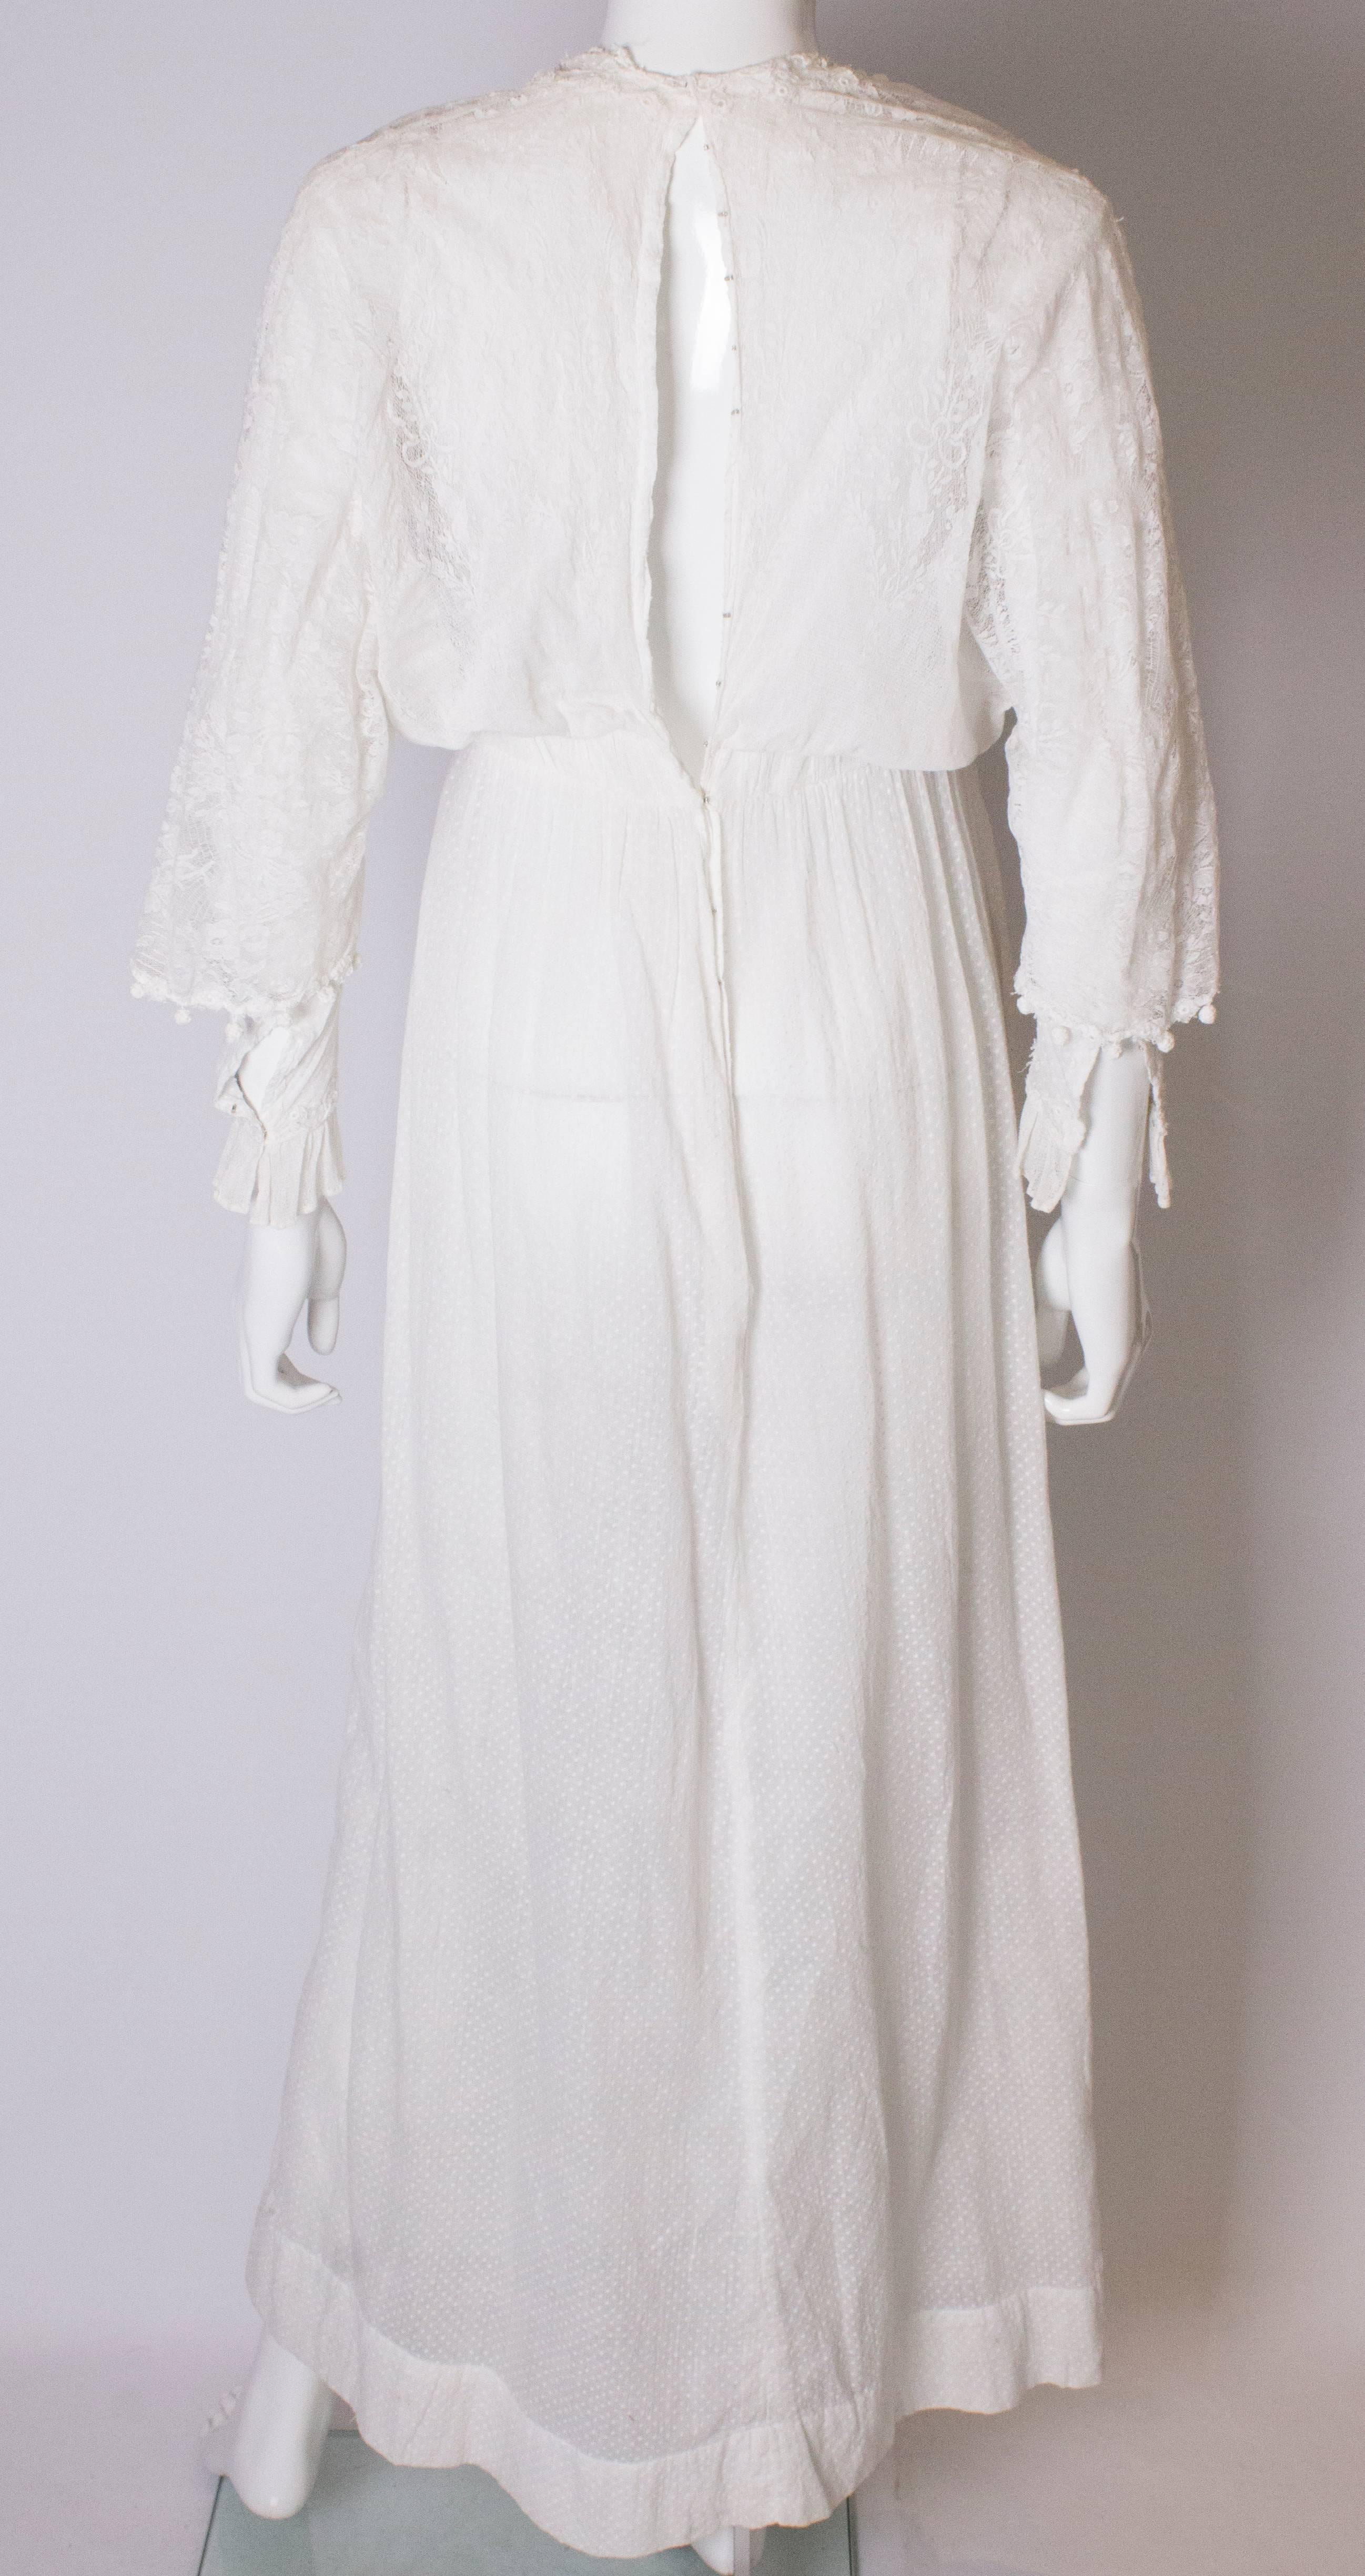 A Vintage Edwardian White Cotton Lawn Dress with Lace Detailil  For Sale 2